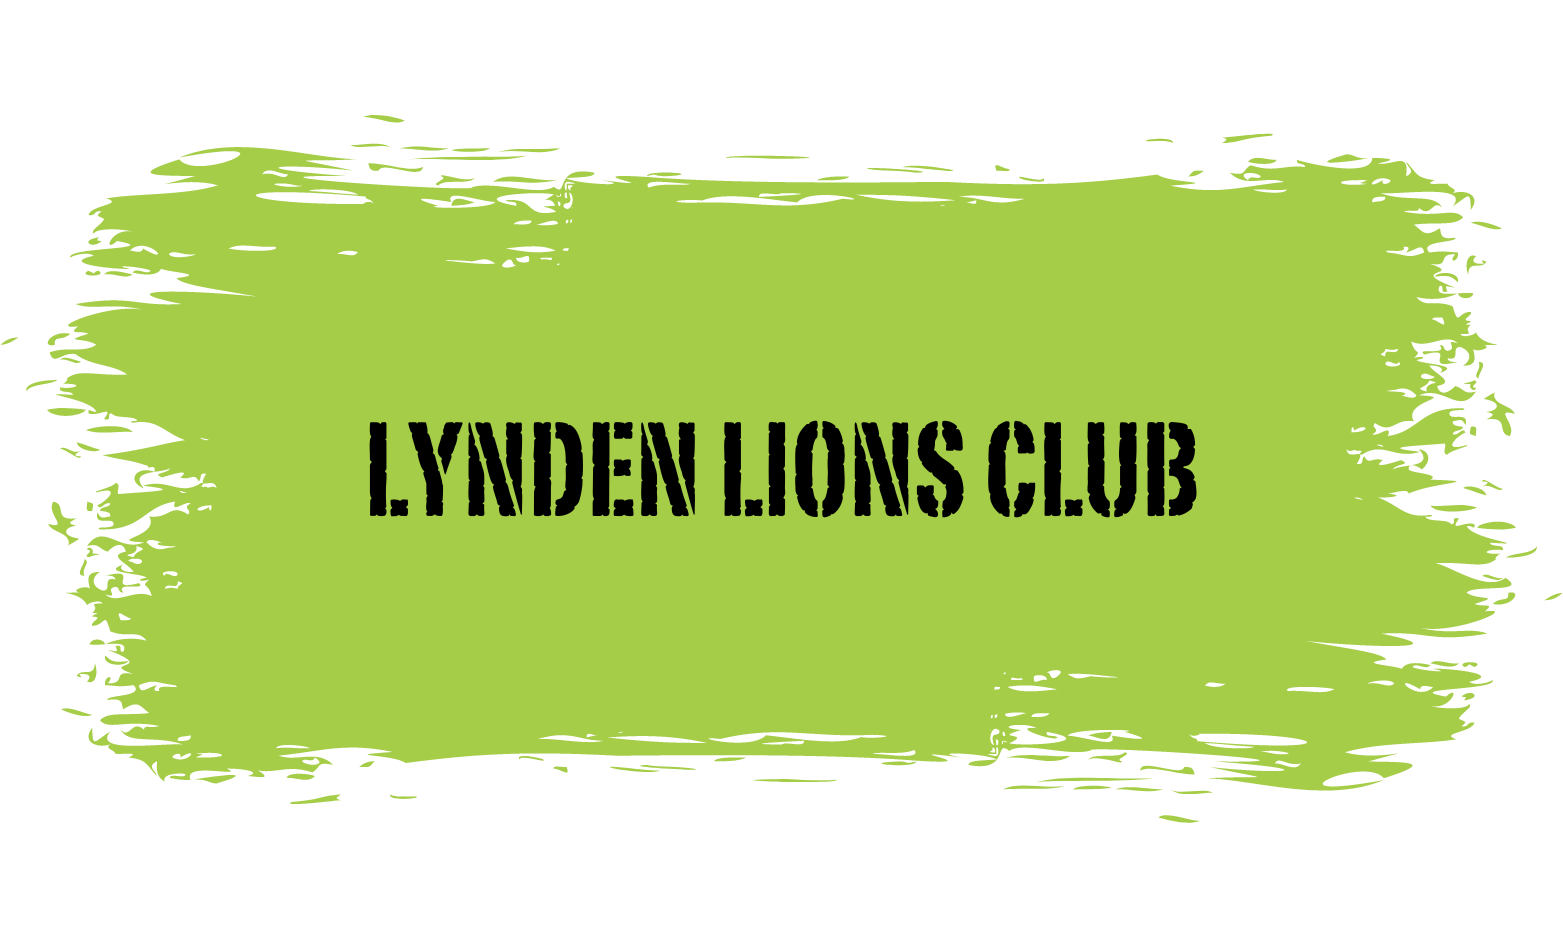 Lynden lions club